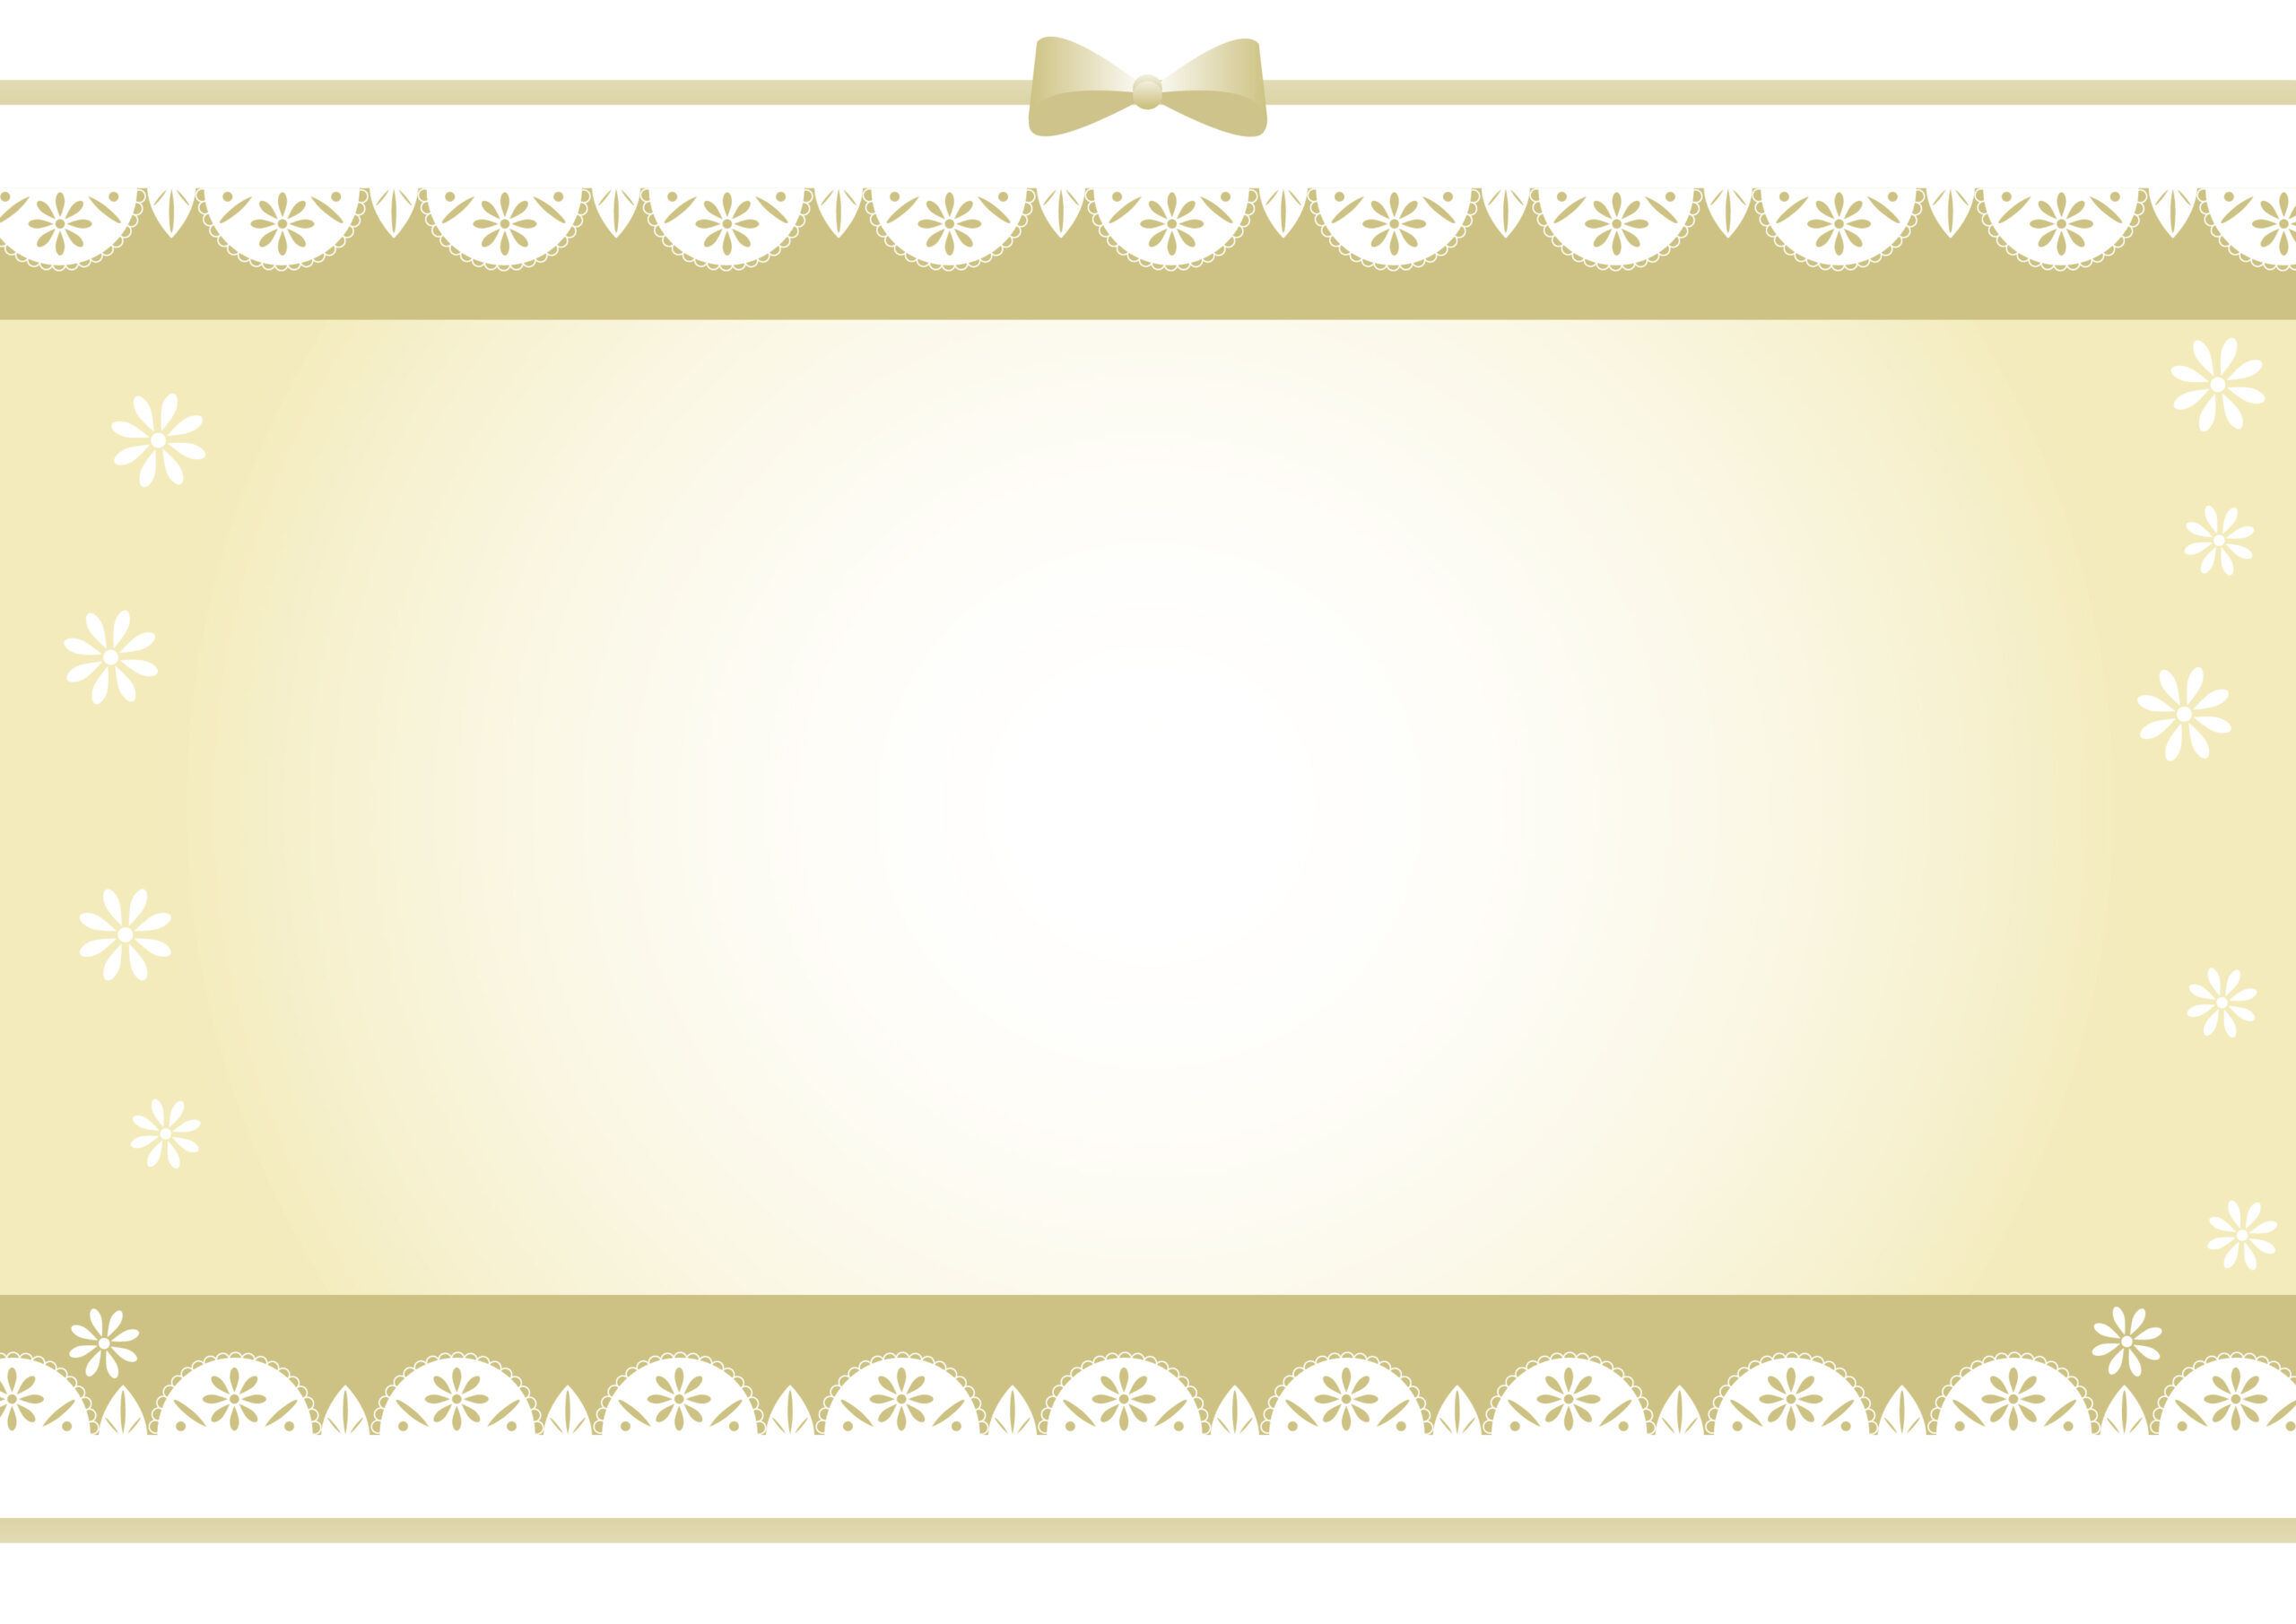 ゴールドカラーの豪華でかわいいデザインのフレーム素材となり、リボンと花模様入りのレースのイラストで、結婚式のお祝いメッセージカードやプロフィールムービーの飾り枠などに使いやすいのでおすすめです。ダウンロード：JPGA4サイズで印